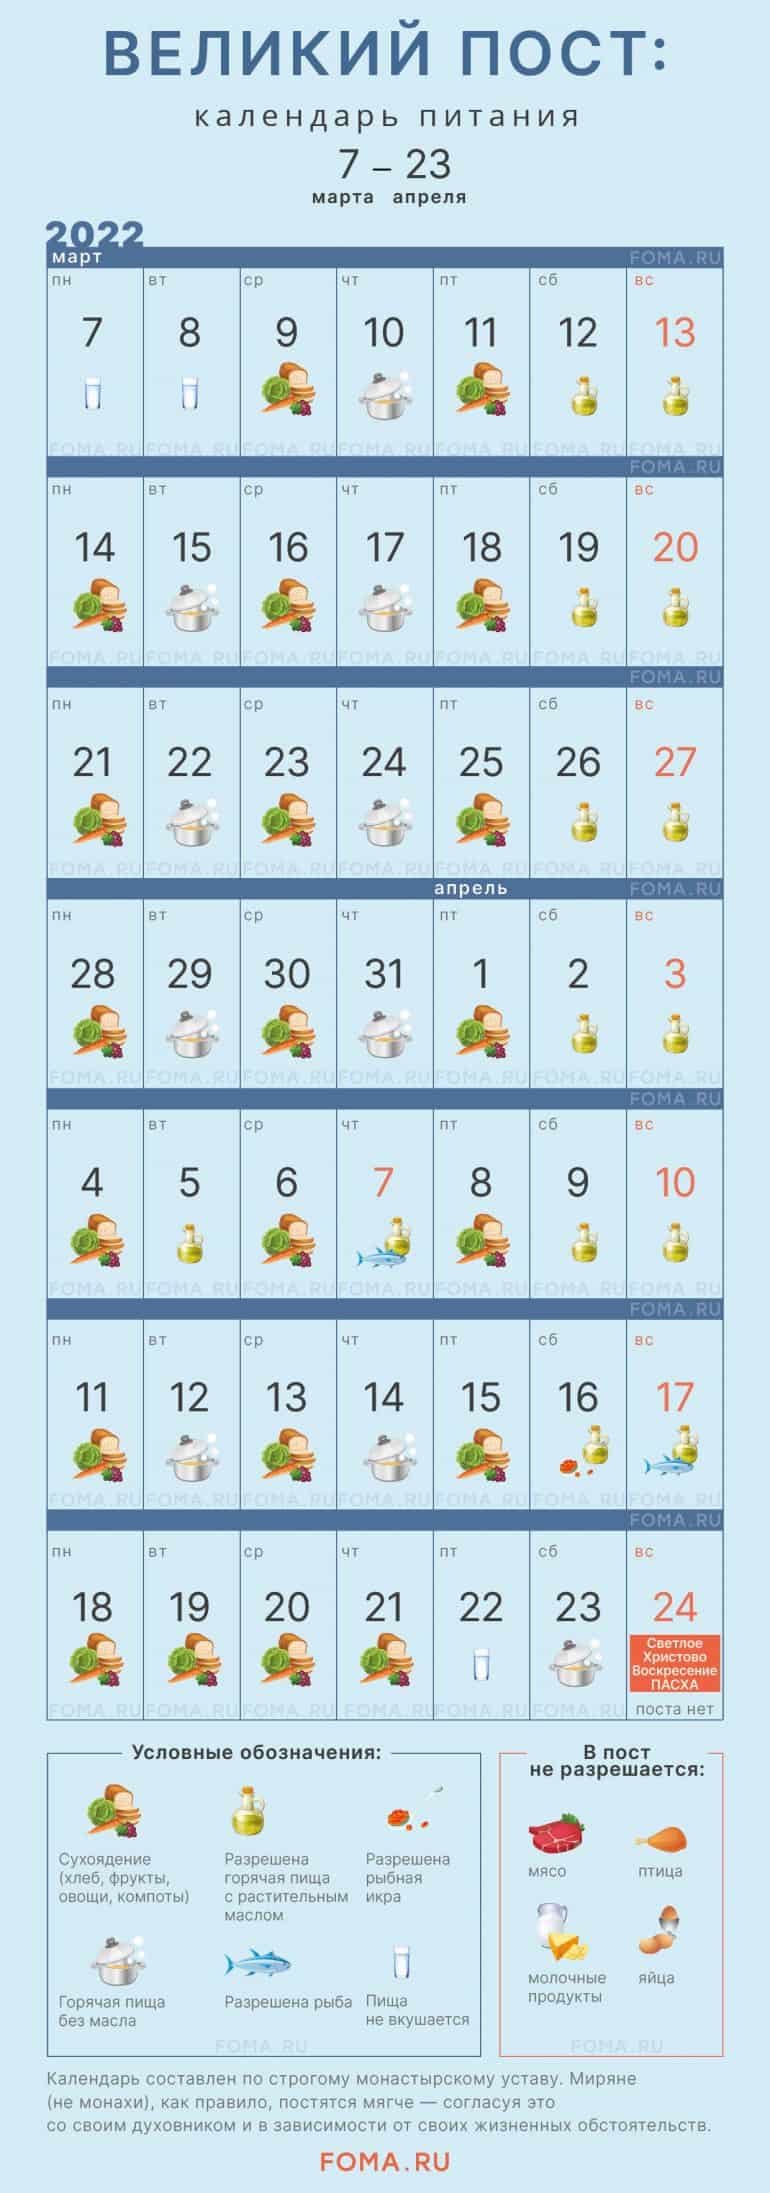 Великий пост: календарь питания по дням